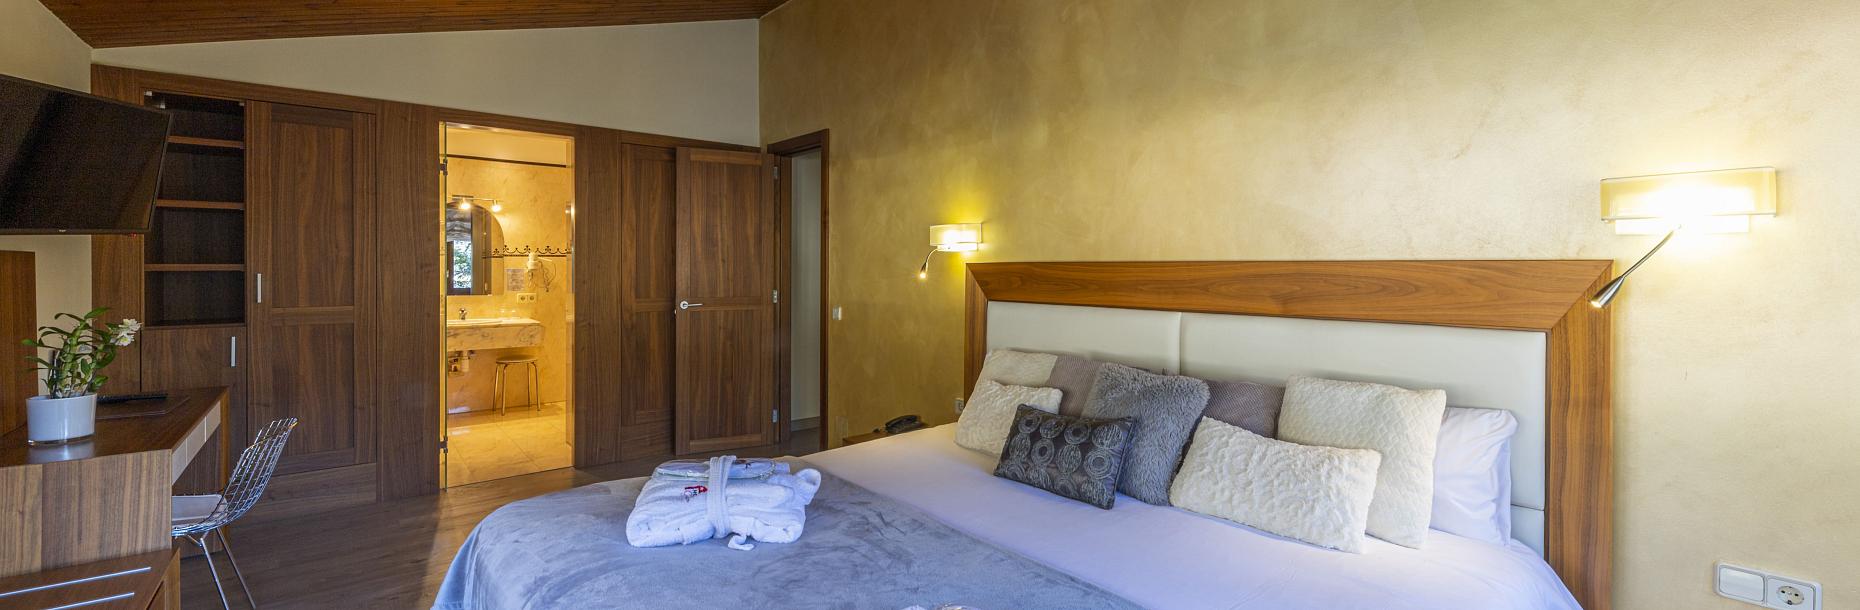 L’hôtel le plus charmant d’Andorre